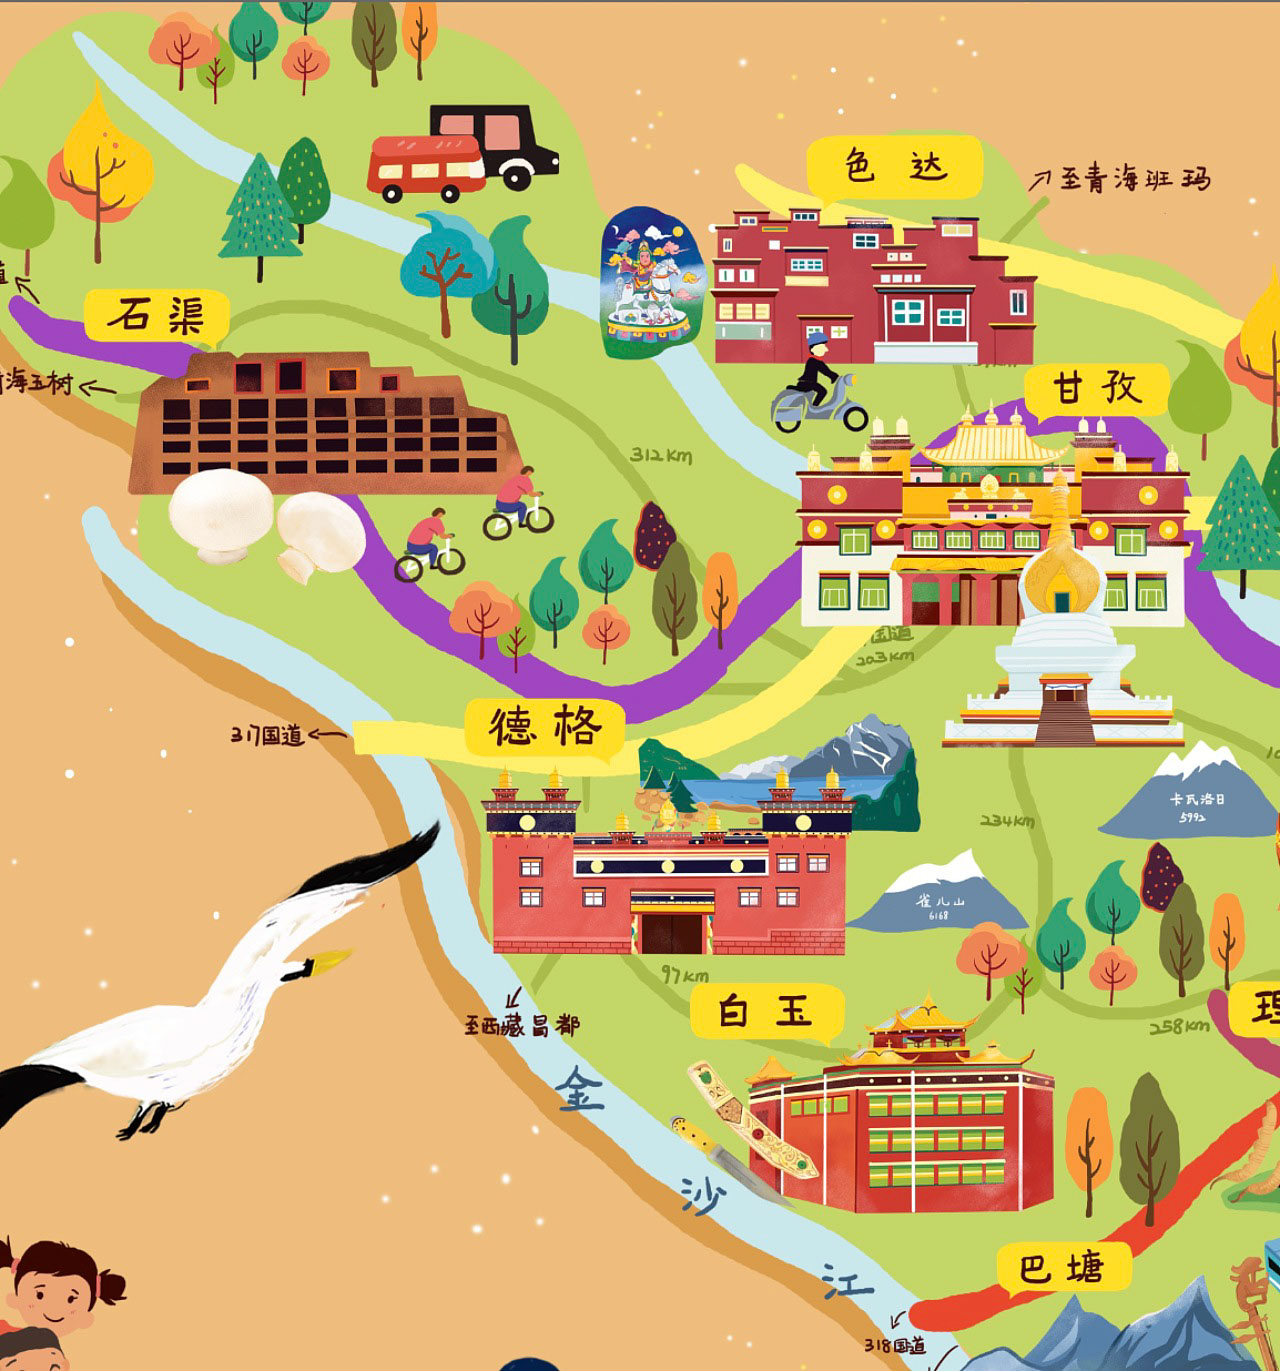 岳口镇手绘地图景区的文化宝库